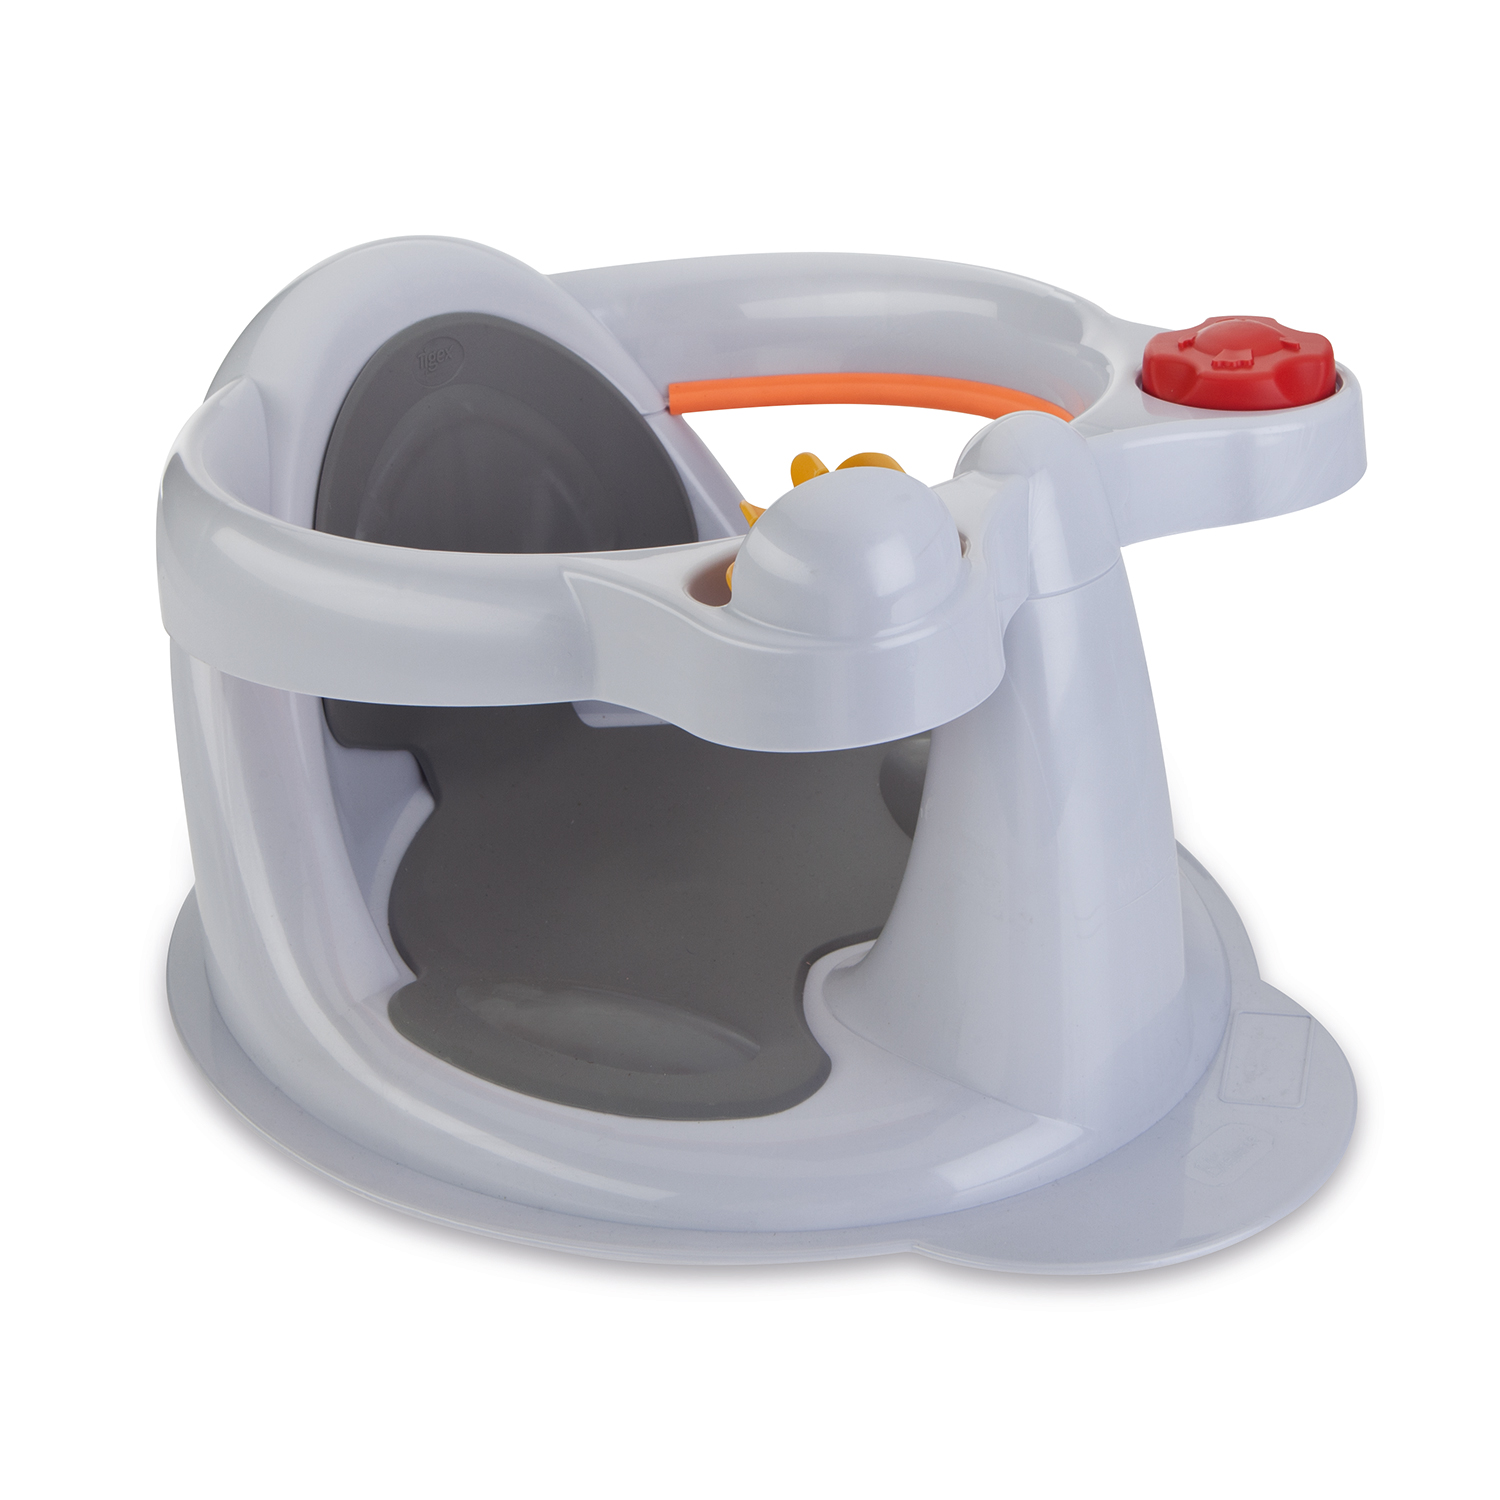 Thermomètre de bain digital Crabe pour bébé - Tigex